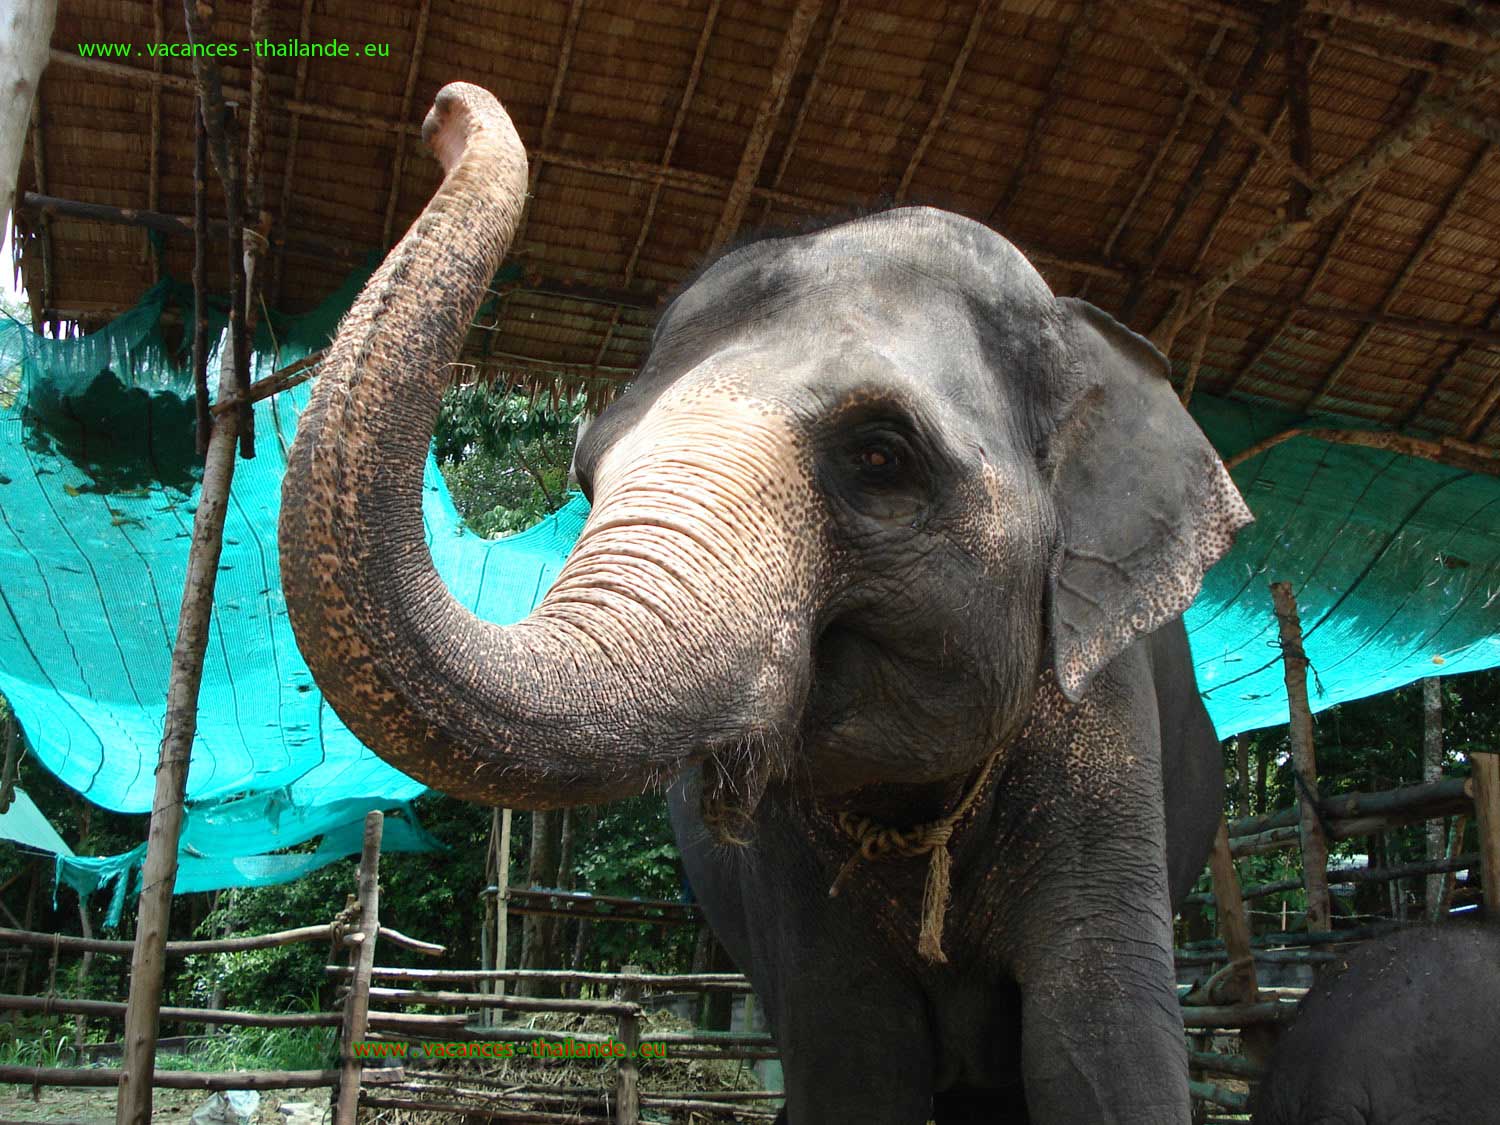 photo 52, location saisonnière villa Paris avec piscine et balade avec éléphant sur l'île de Koh Samui en Thaîlande